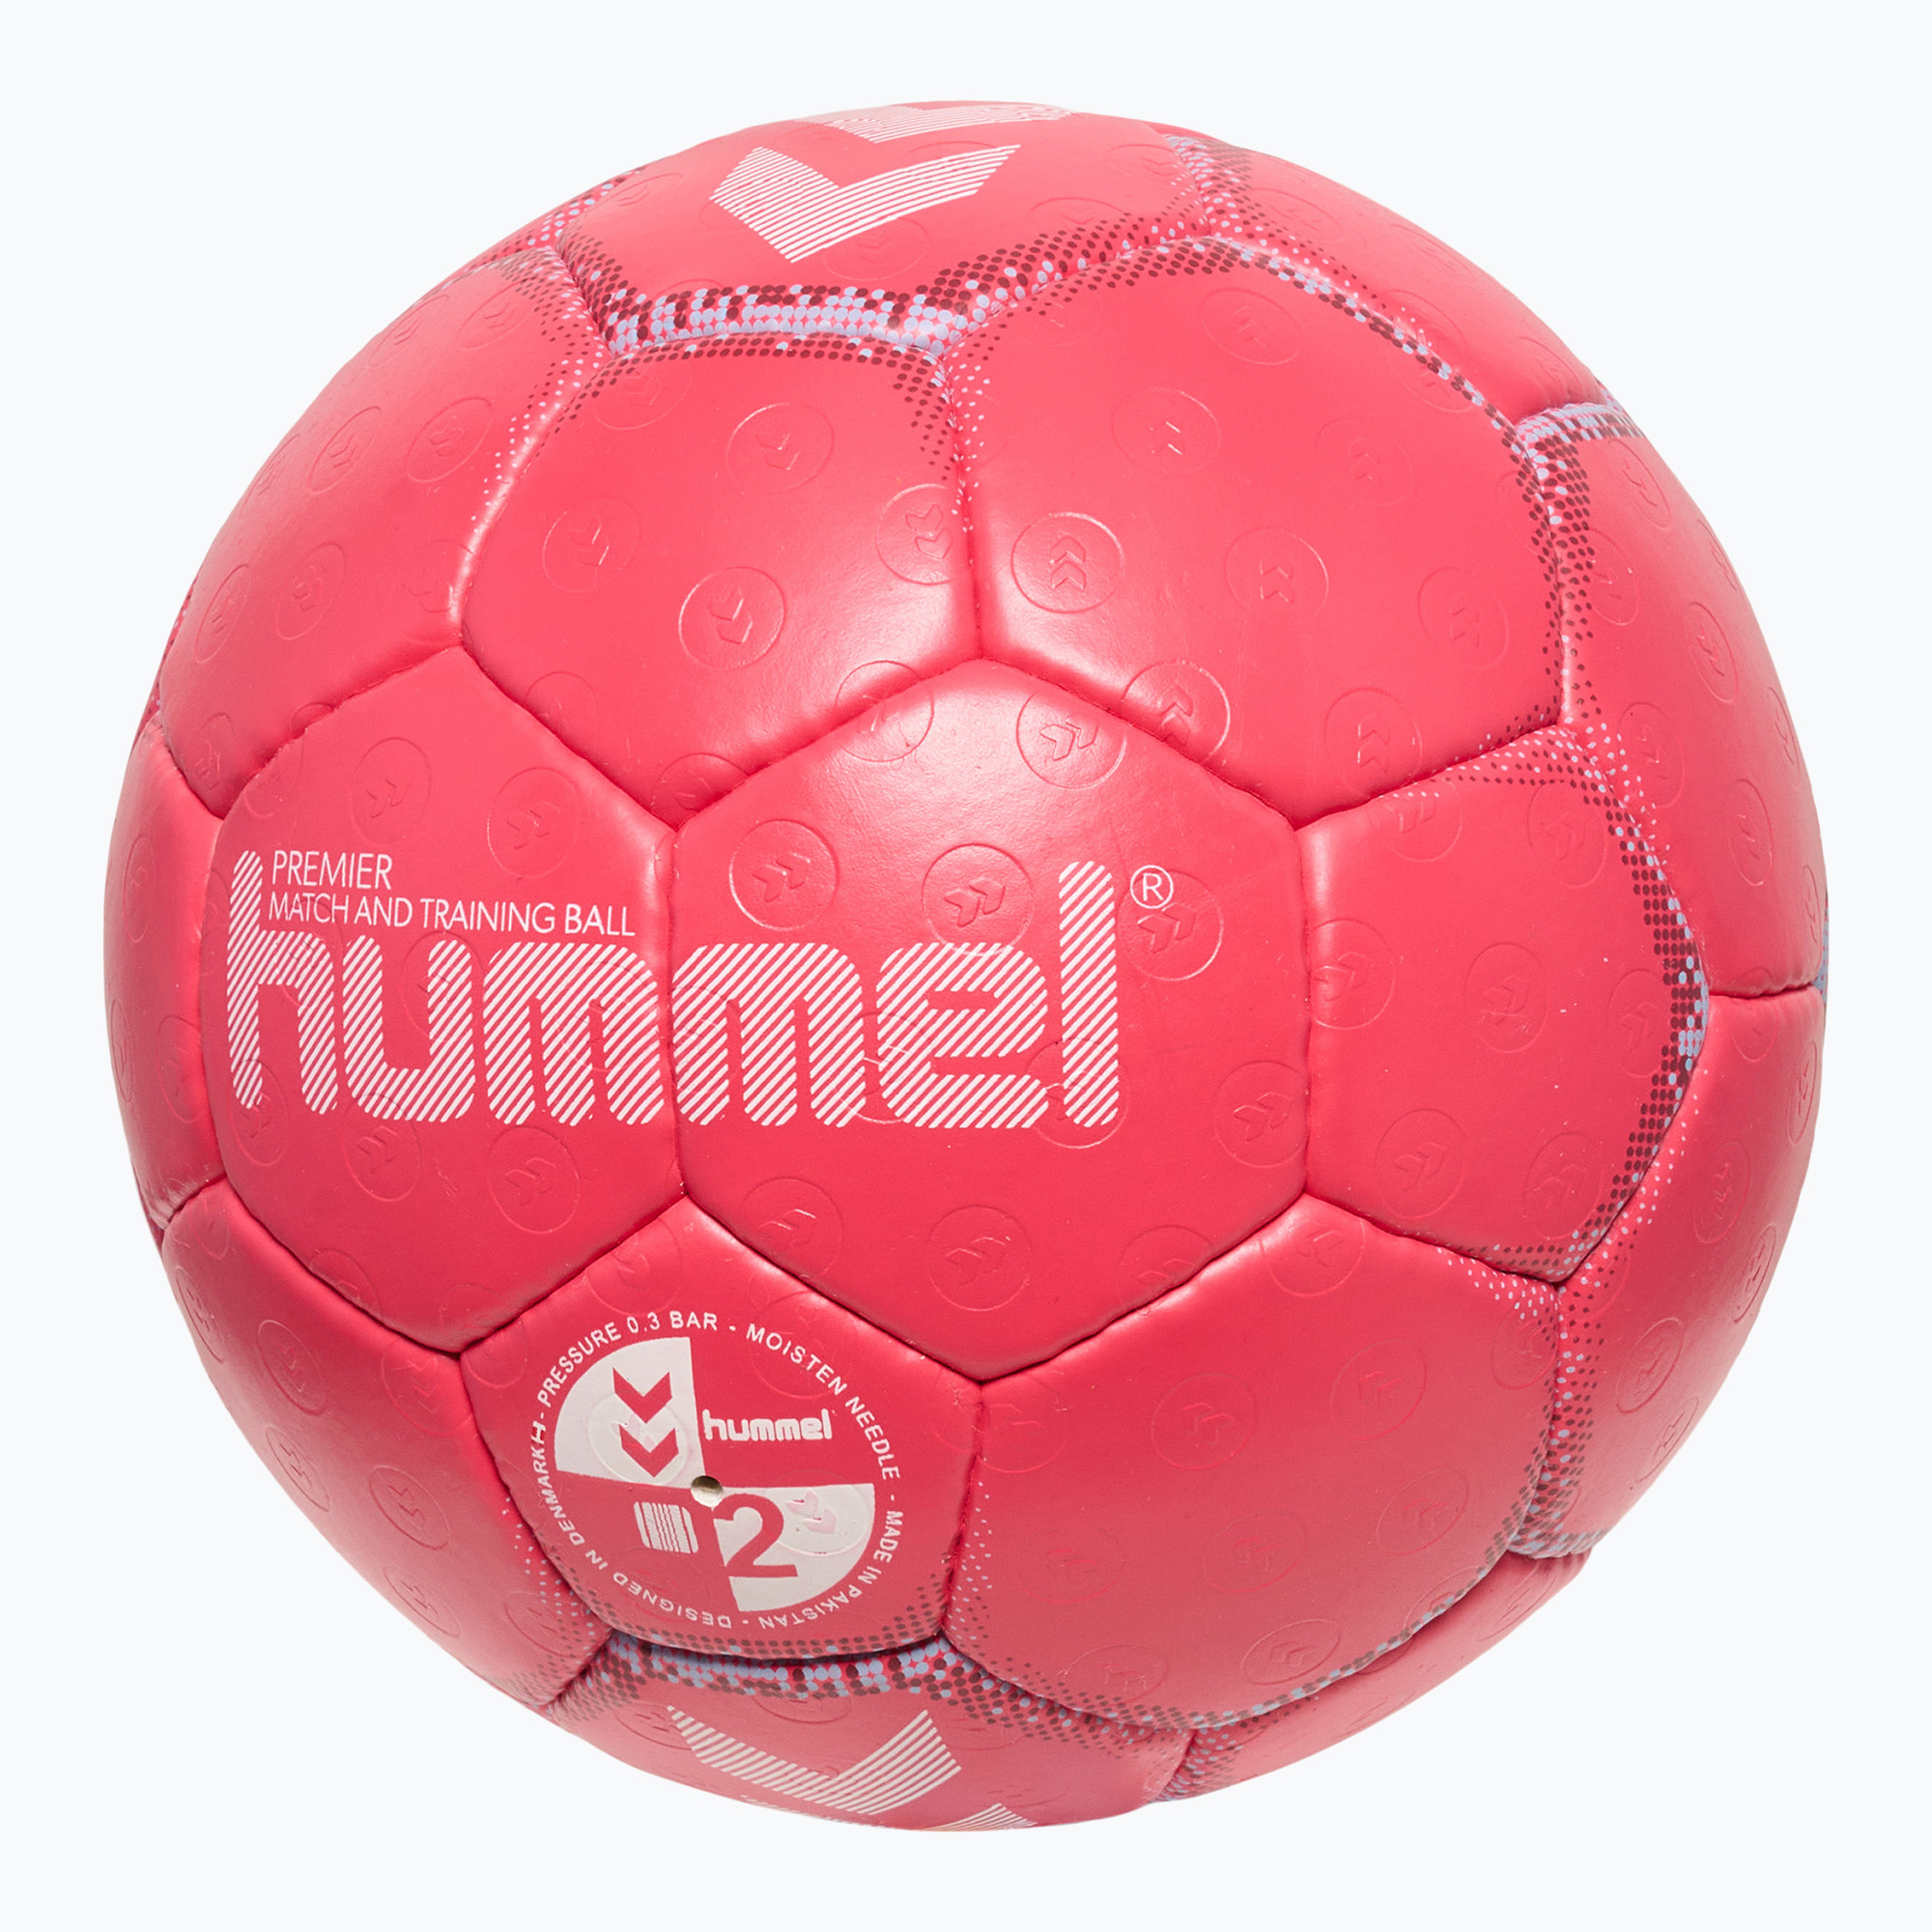 Hummel Premier HB хандбал червено/синьо/бяло размер 2